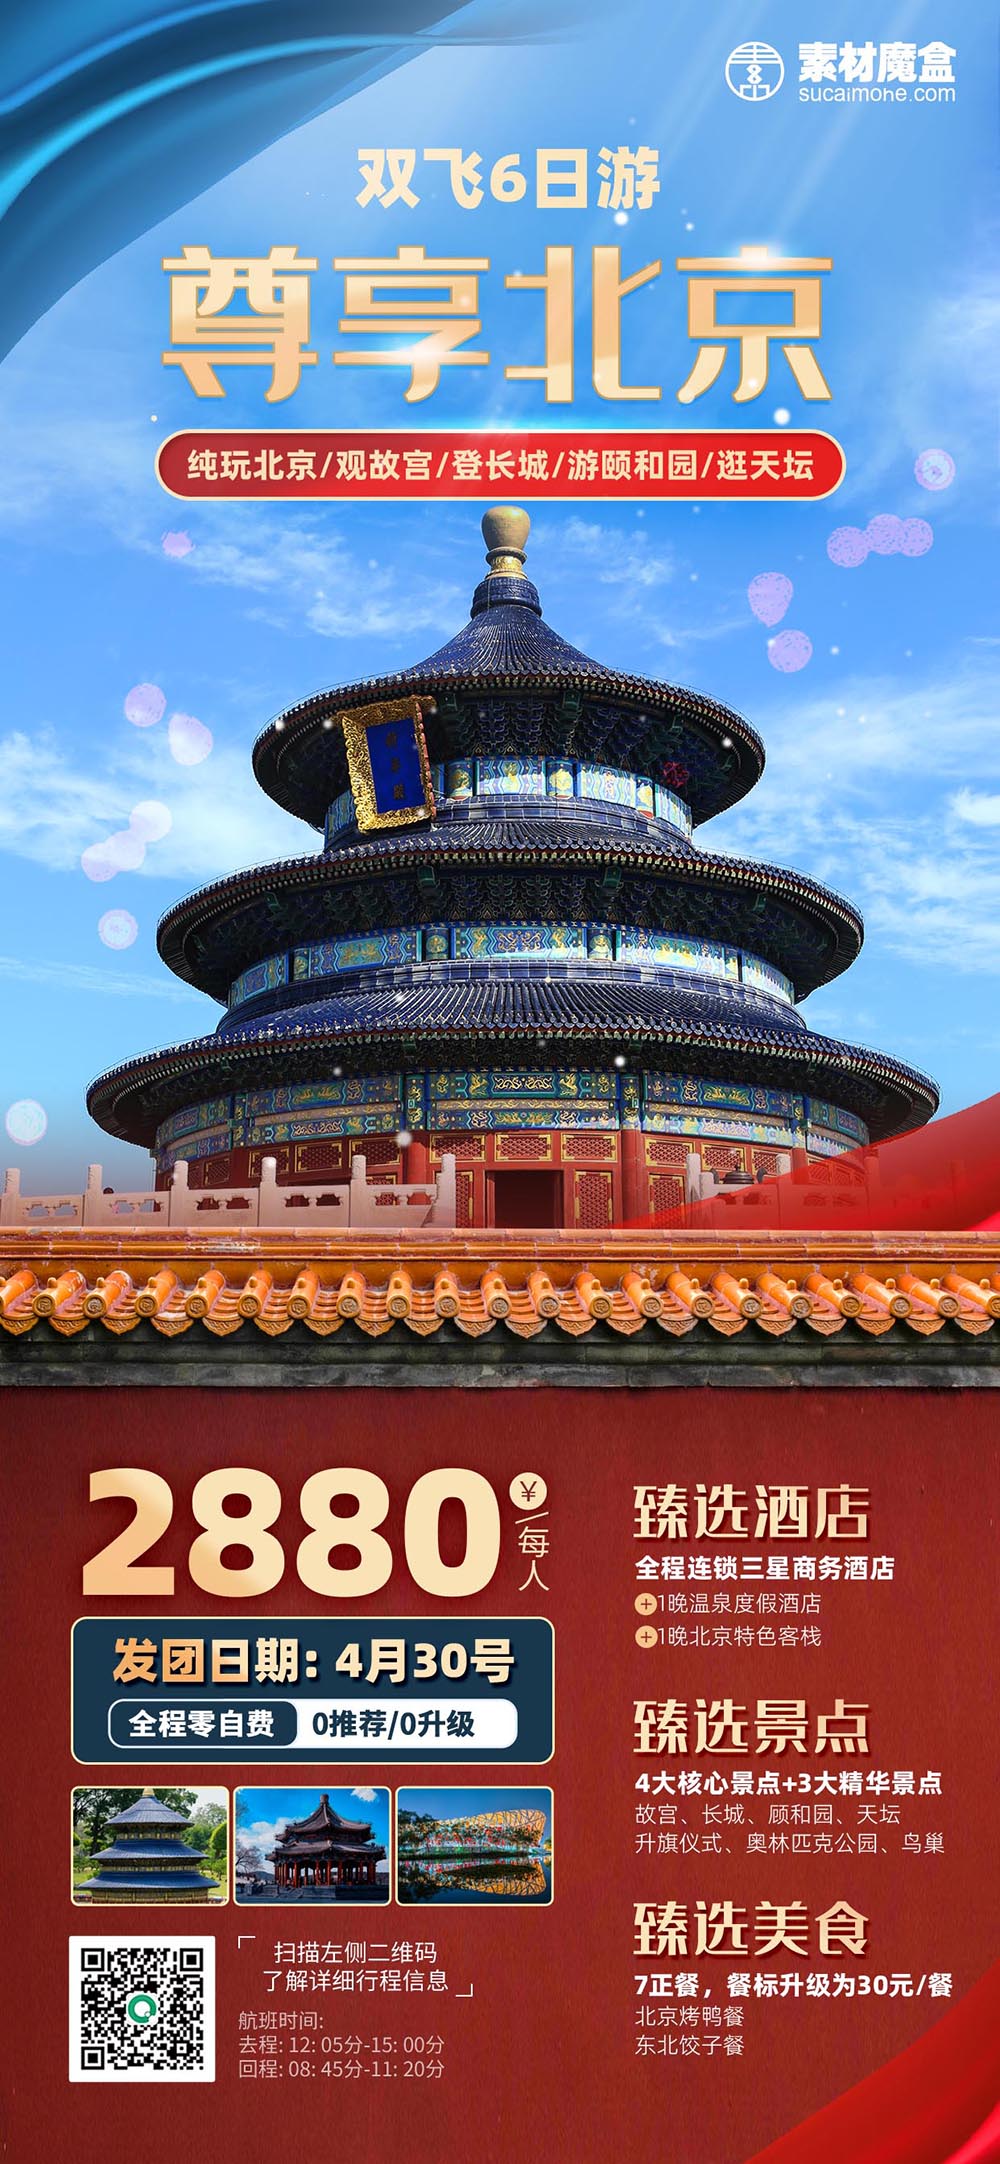 五一劳动节北京旅游旅行促销海报